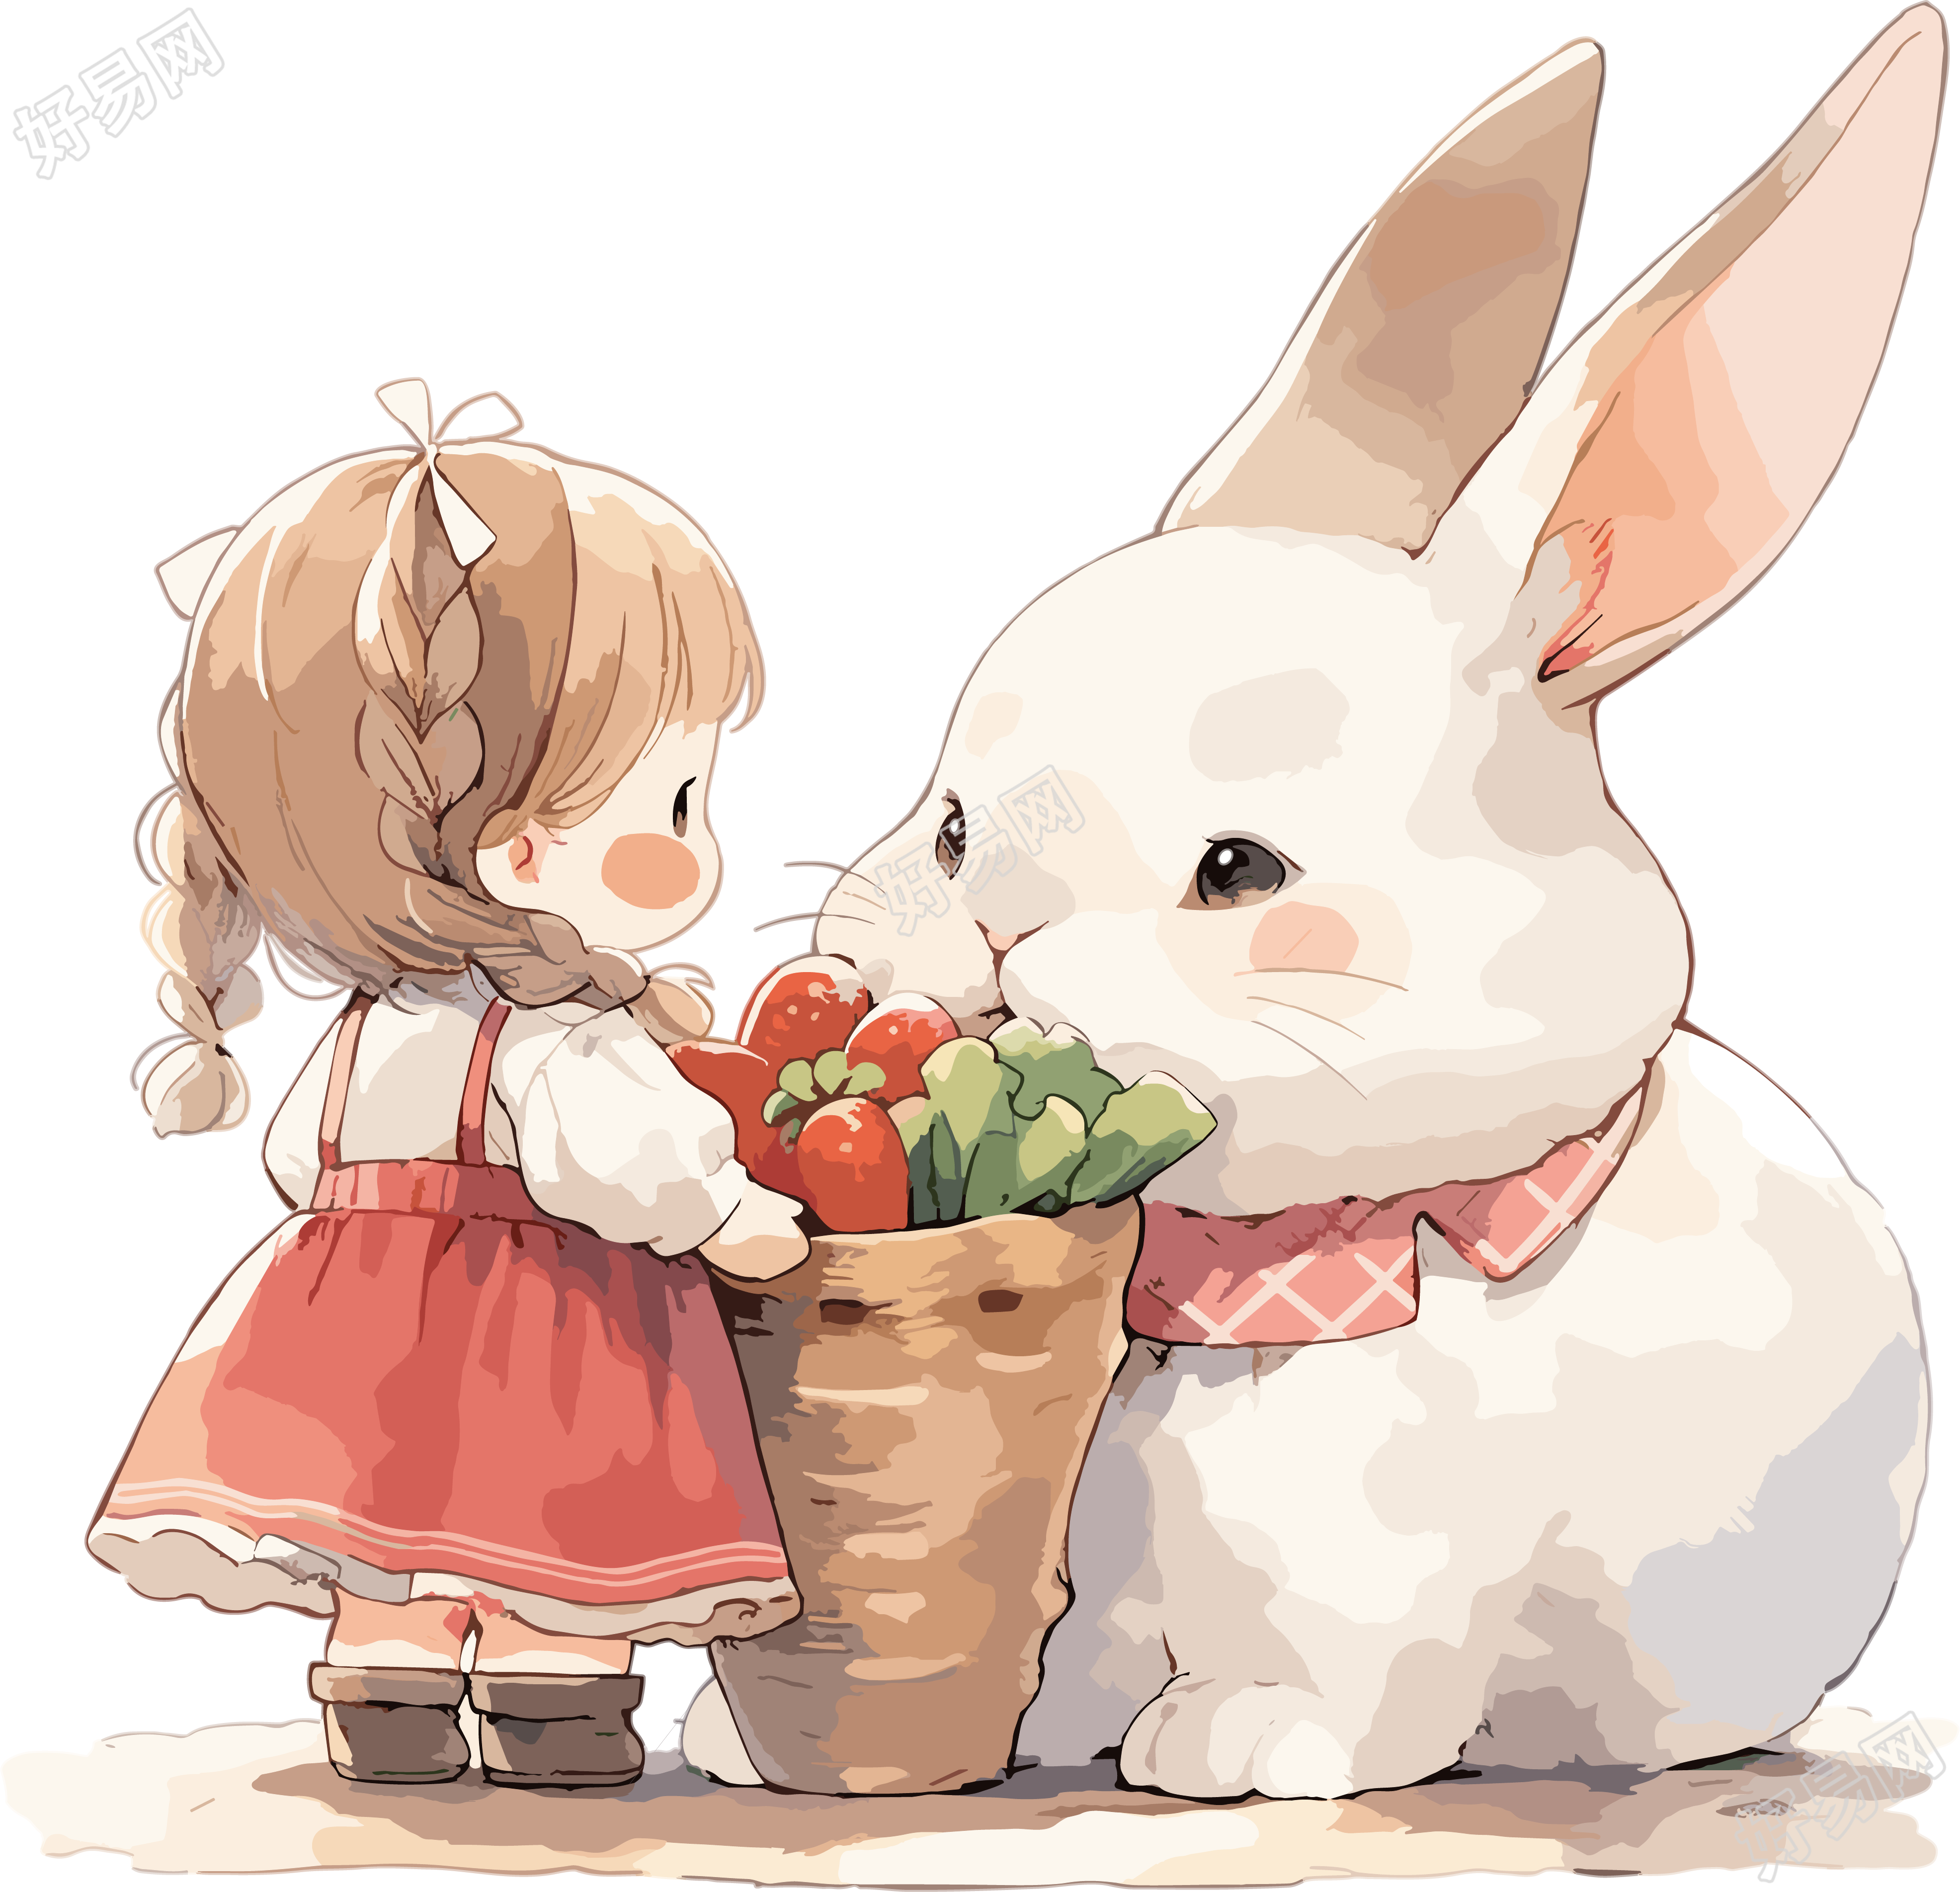 连衣裙小女孩和白兔可爱简笔画水彩素材